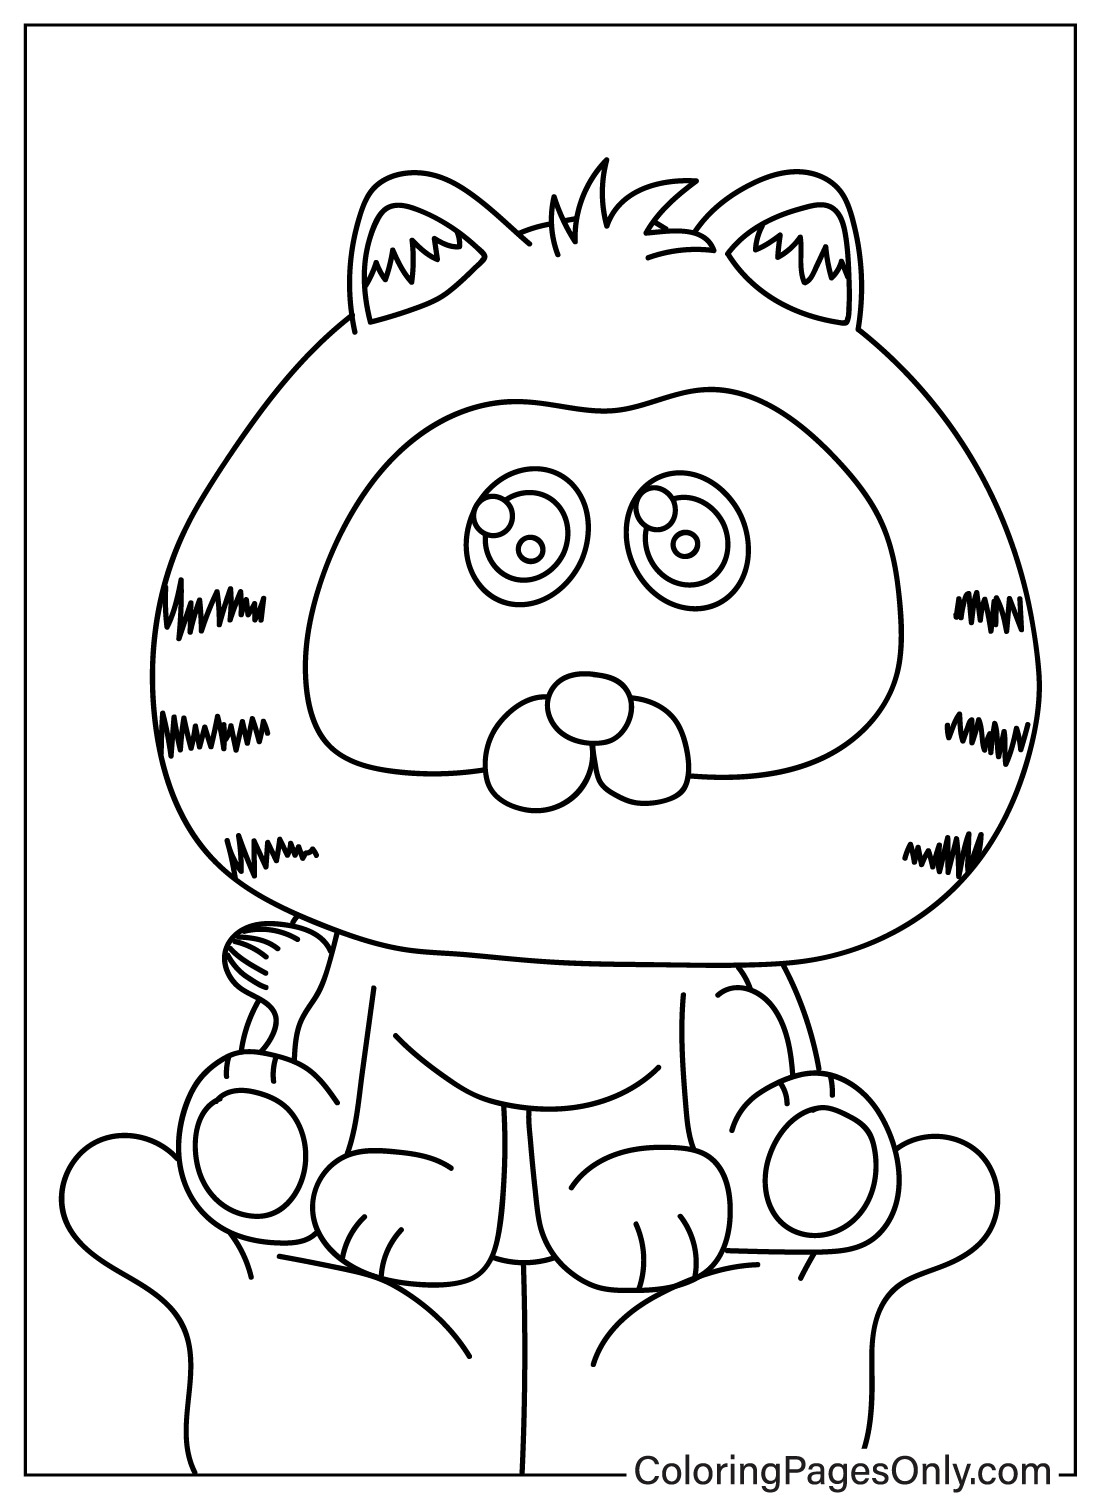 Coloriage Garfield gratuit à imprimer à partir de Garfield